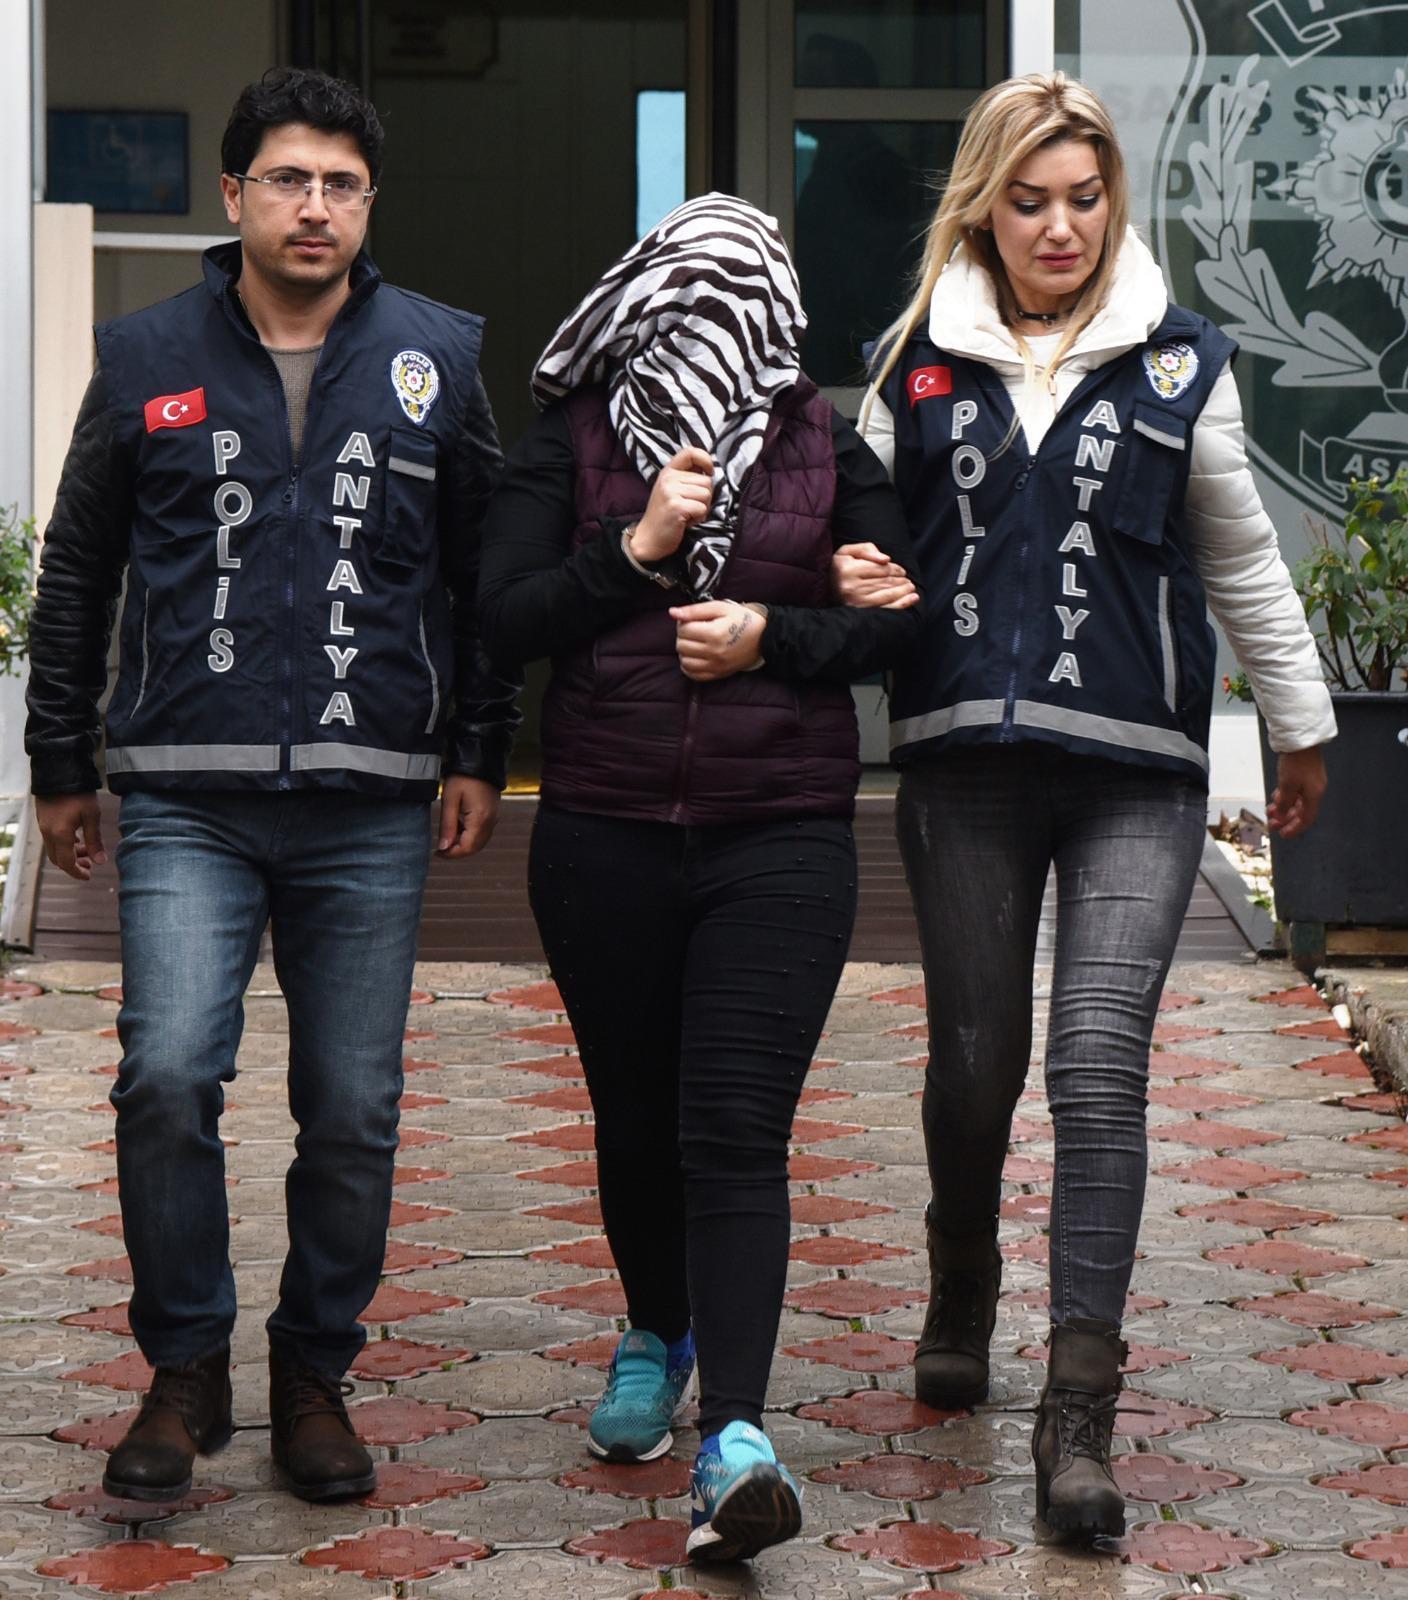 Antalya’da ev sahibine çıplak fotoğraflı şantaj iddiası